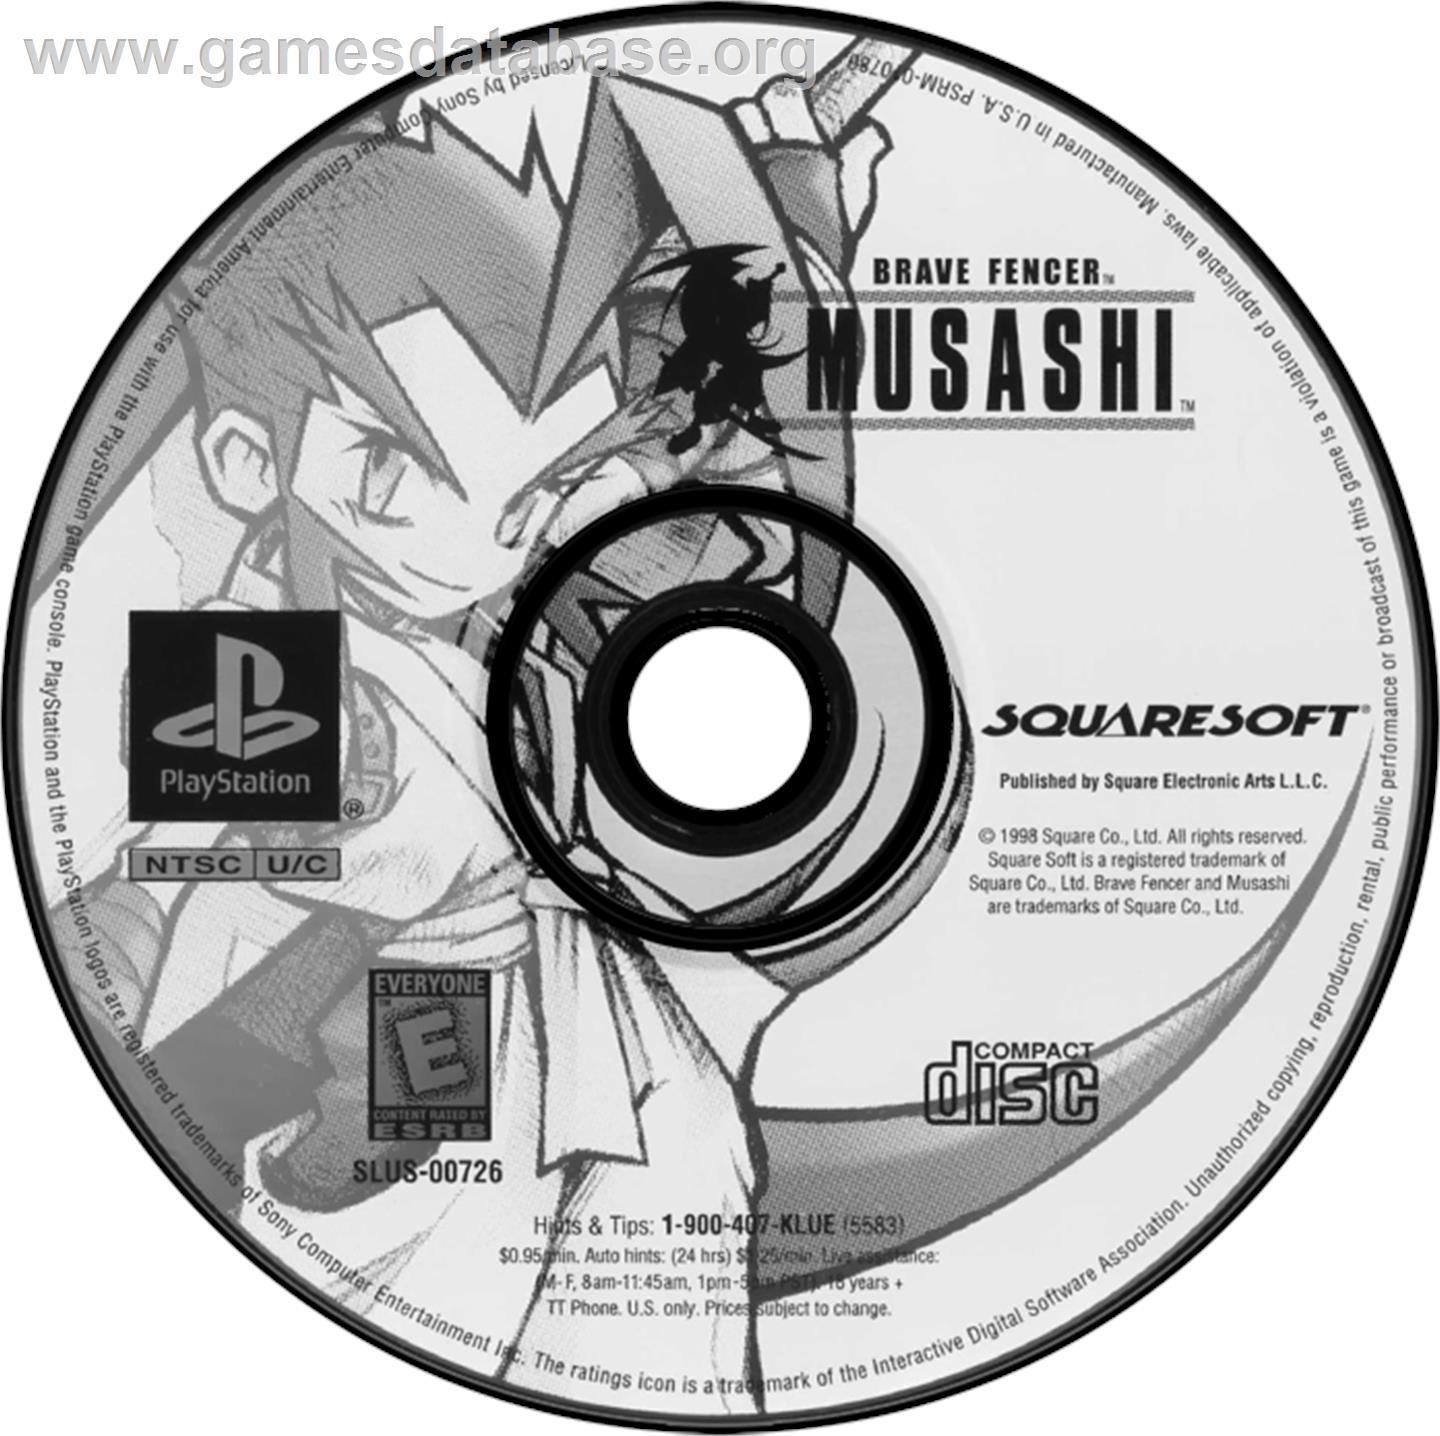 Brave Fencer Musashi - Sony Playstation - Artwork - Disc